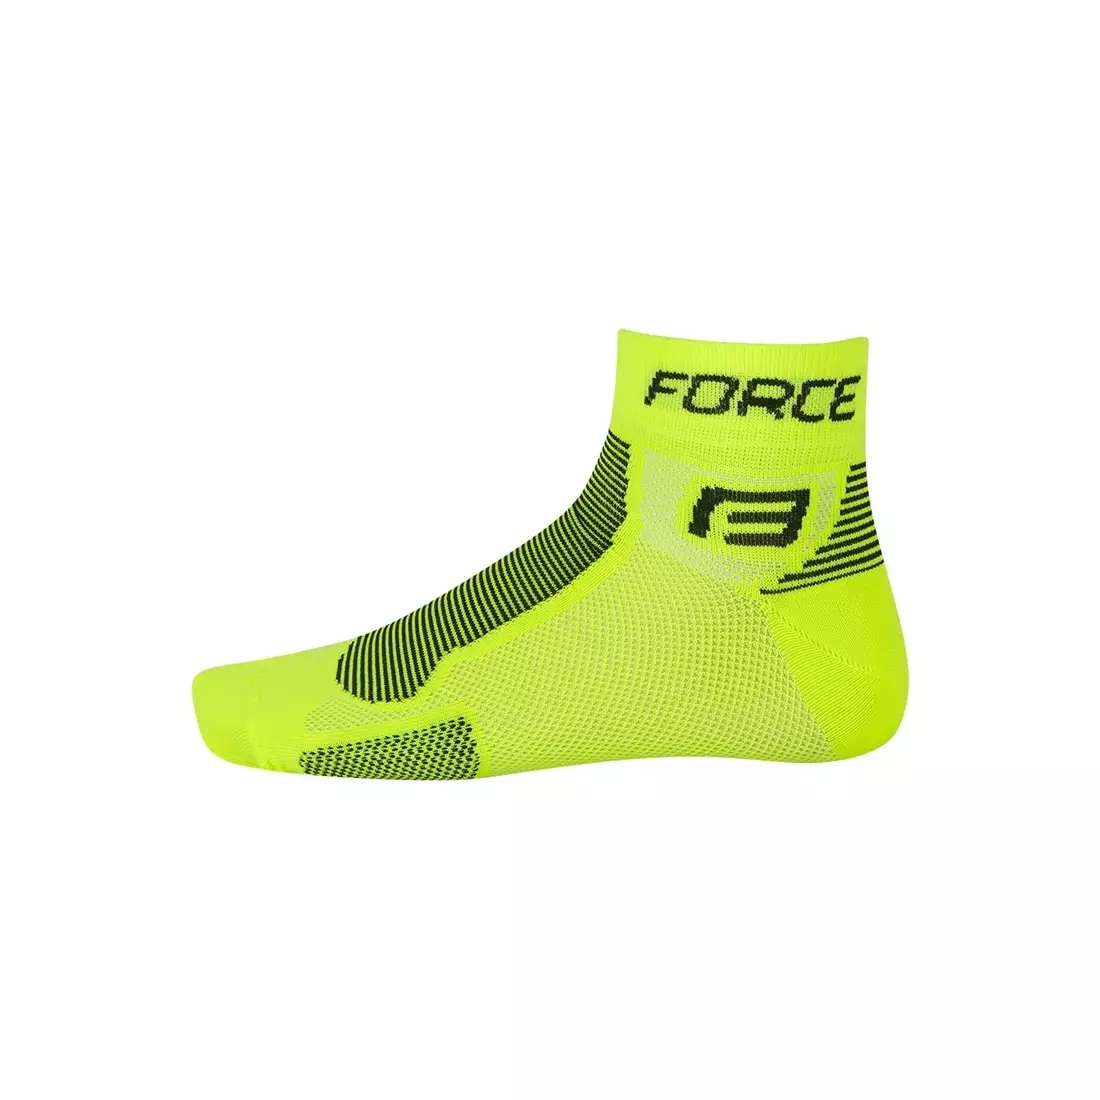 FORCE Socken 9010, Farbe: Fluor